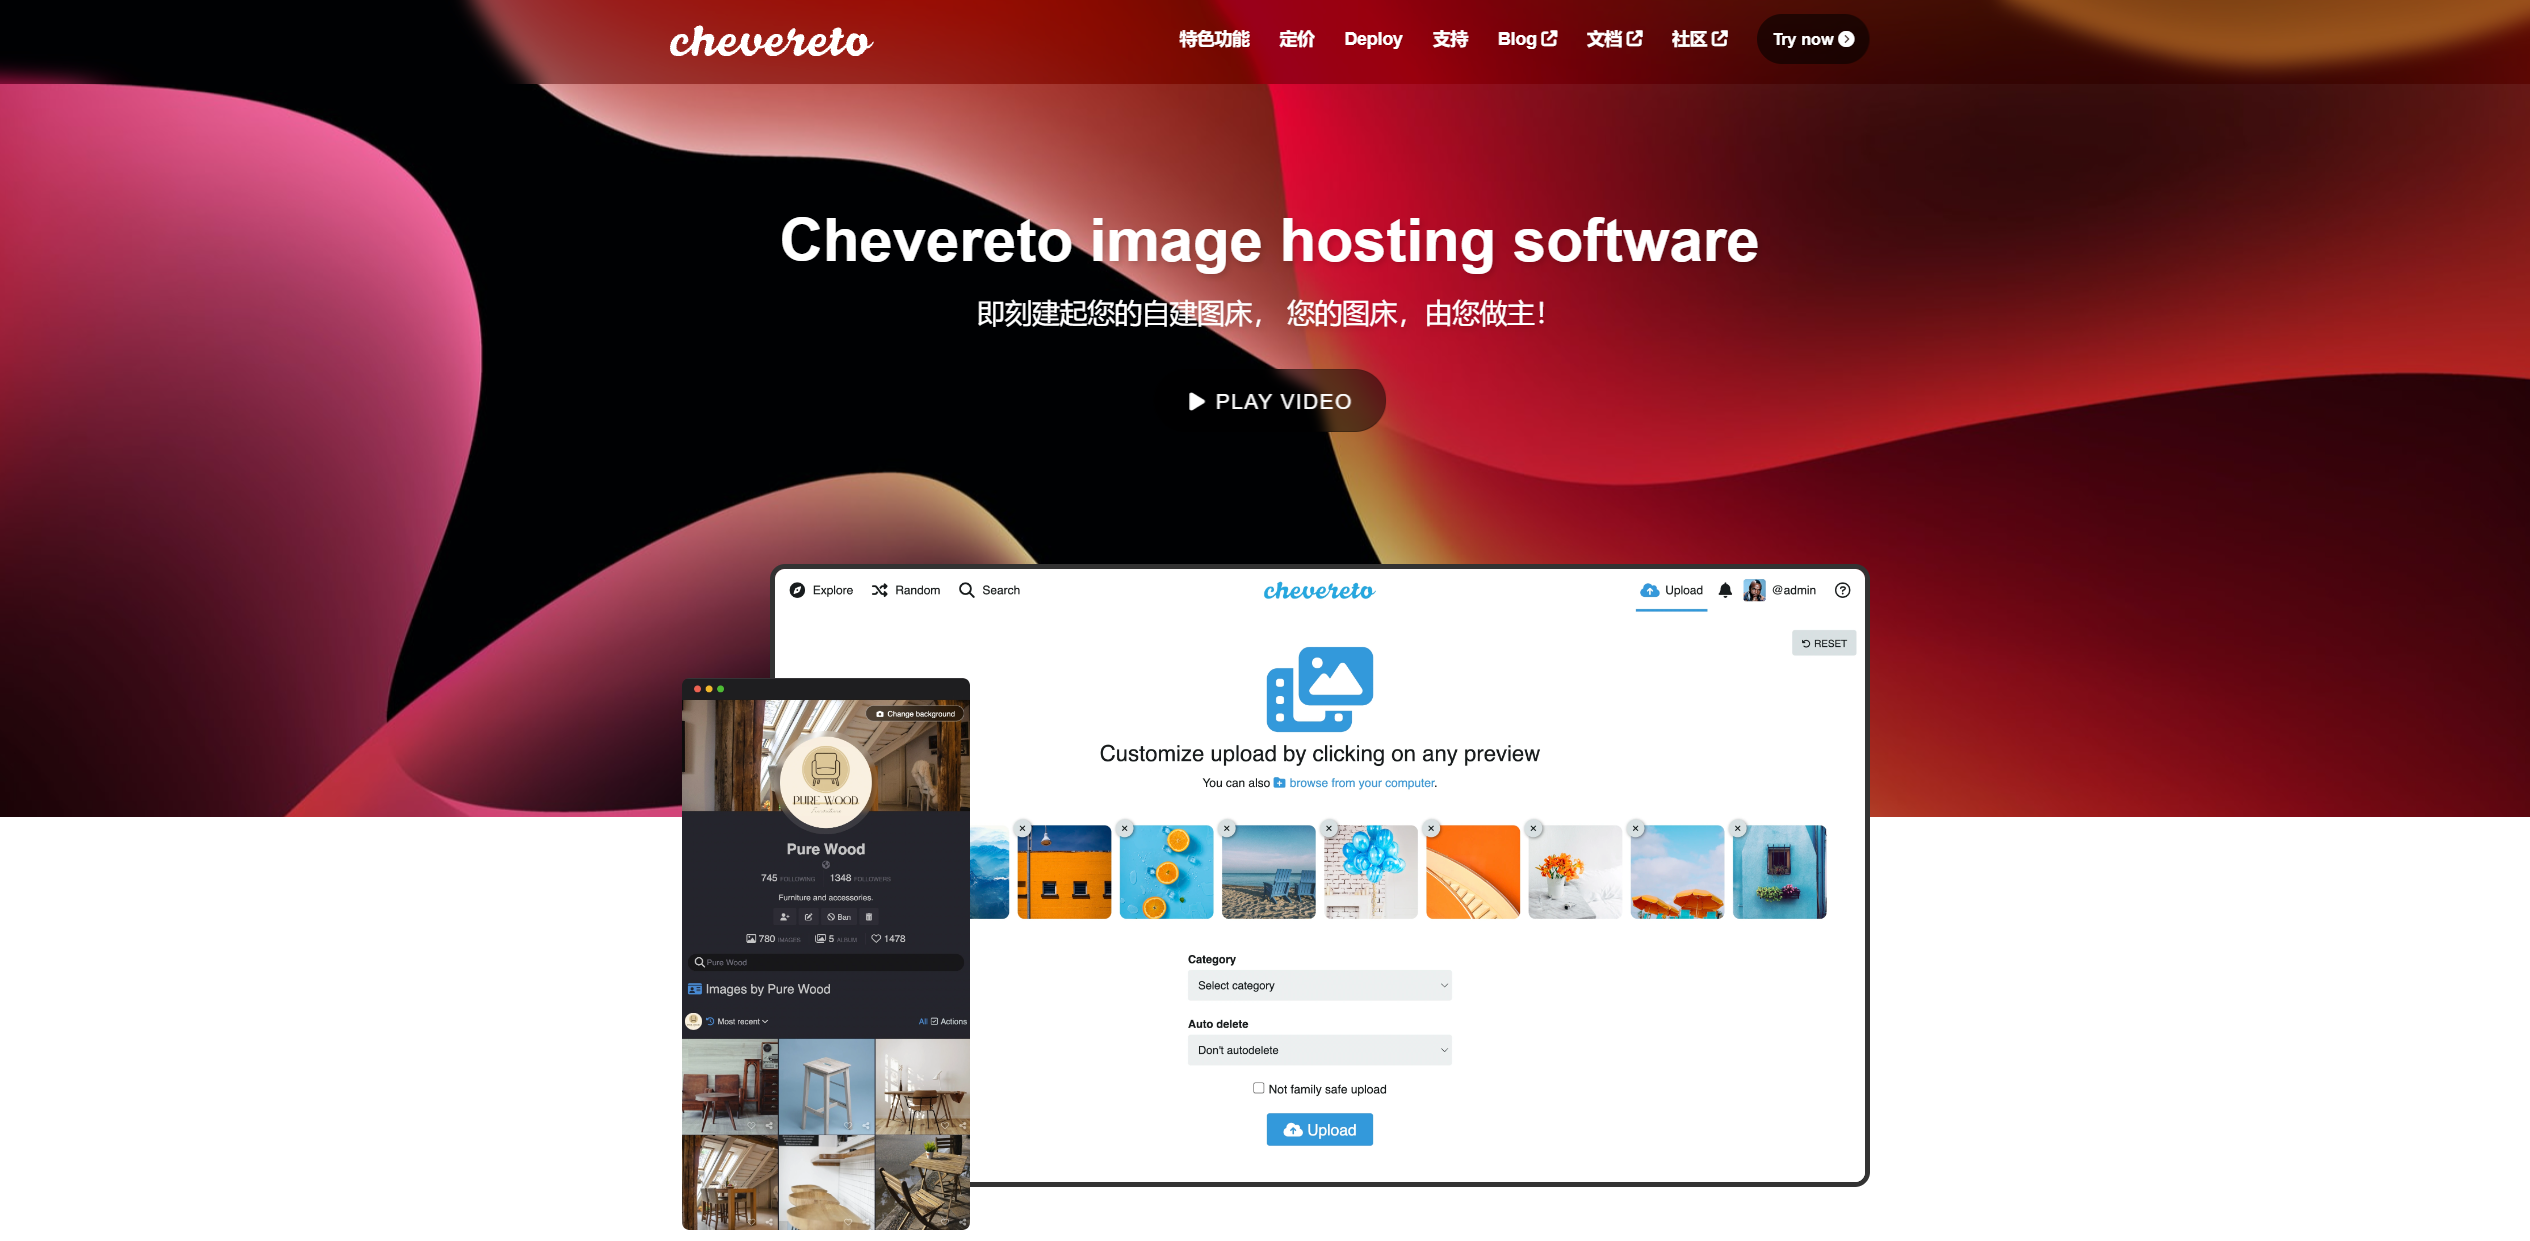 宝塔面板 Chevereto4.0、4x 、v4图床安装教程